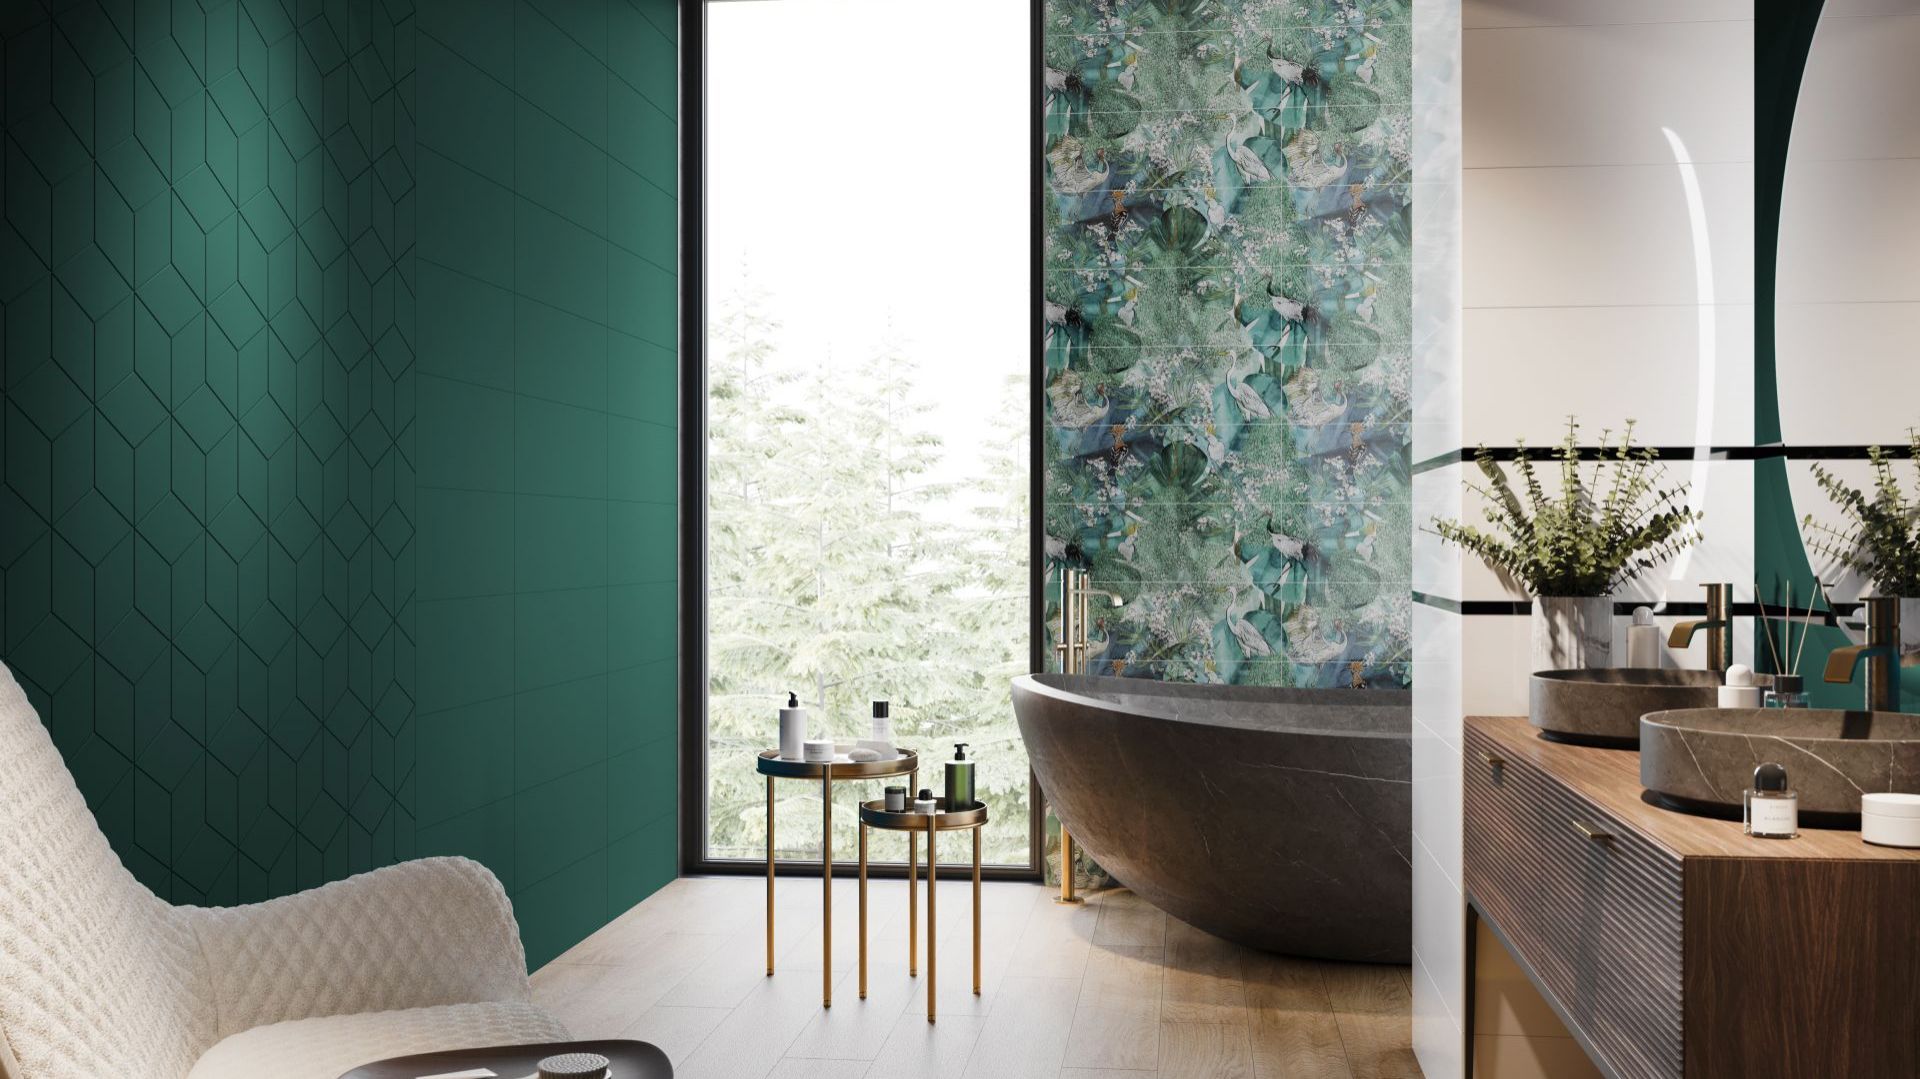 Te płytki łazienkowe są piękne! Polska marka Ceramica Bianca z niesamowitą kolekcją na ściany i podłogi